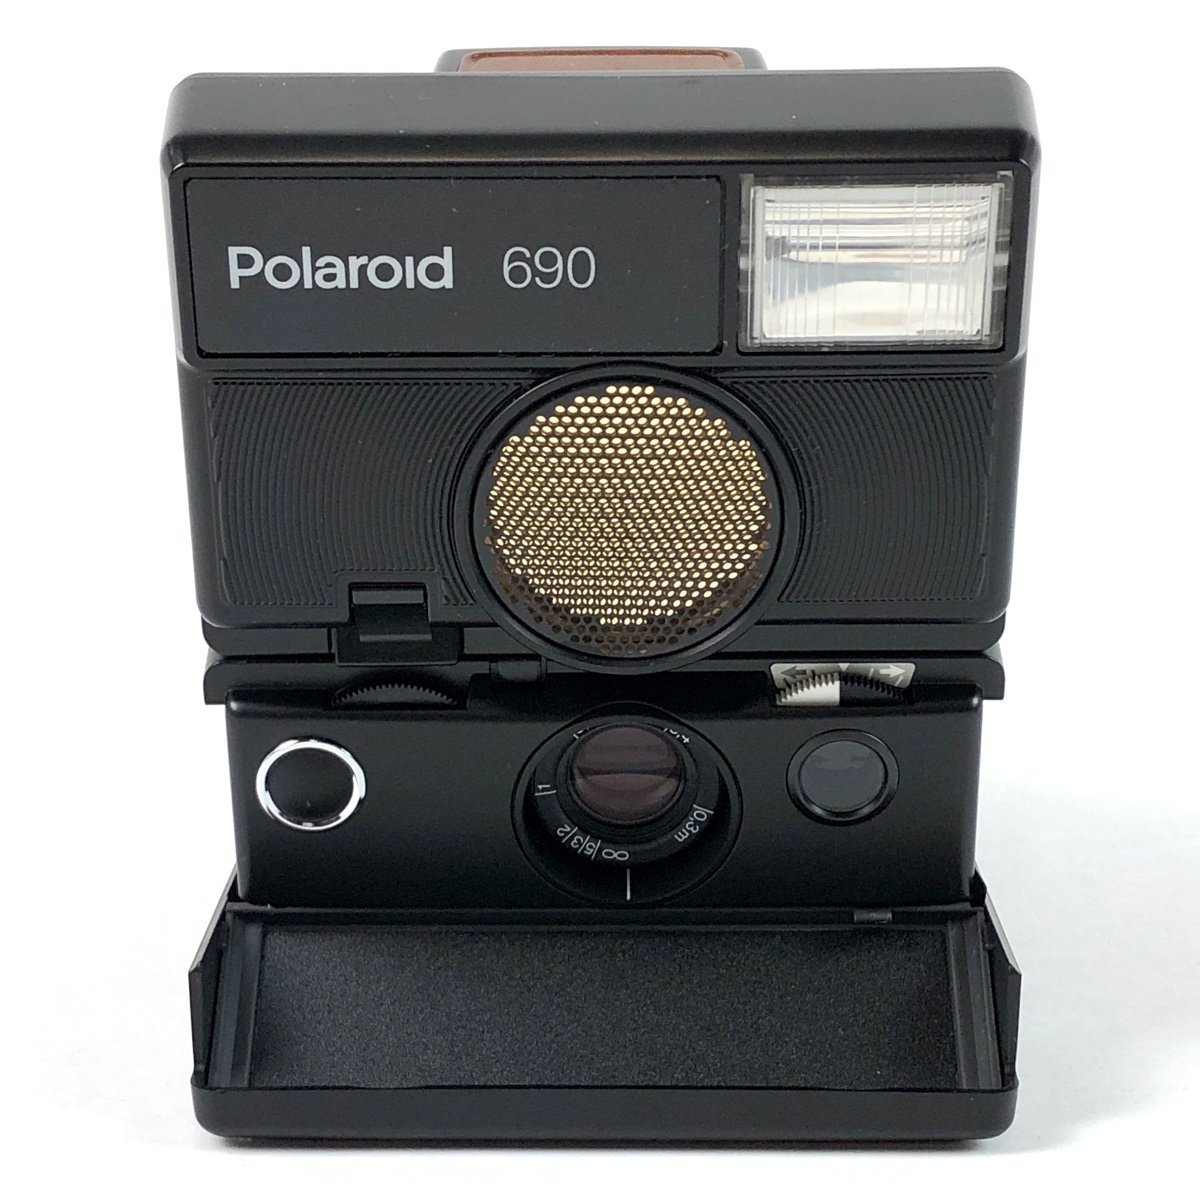 Yahoo!オークション -「polaroid 690」の落札相場・落札価格